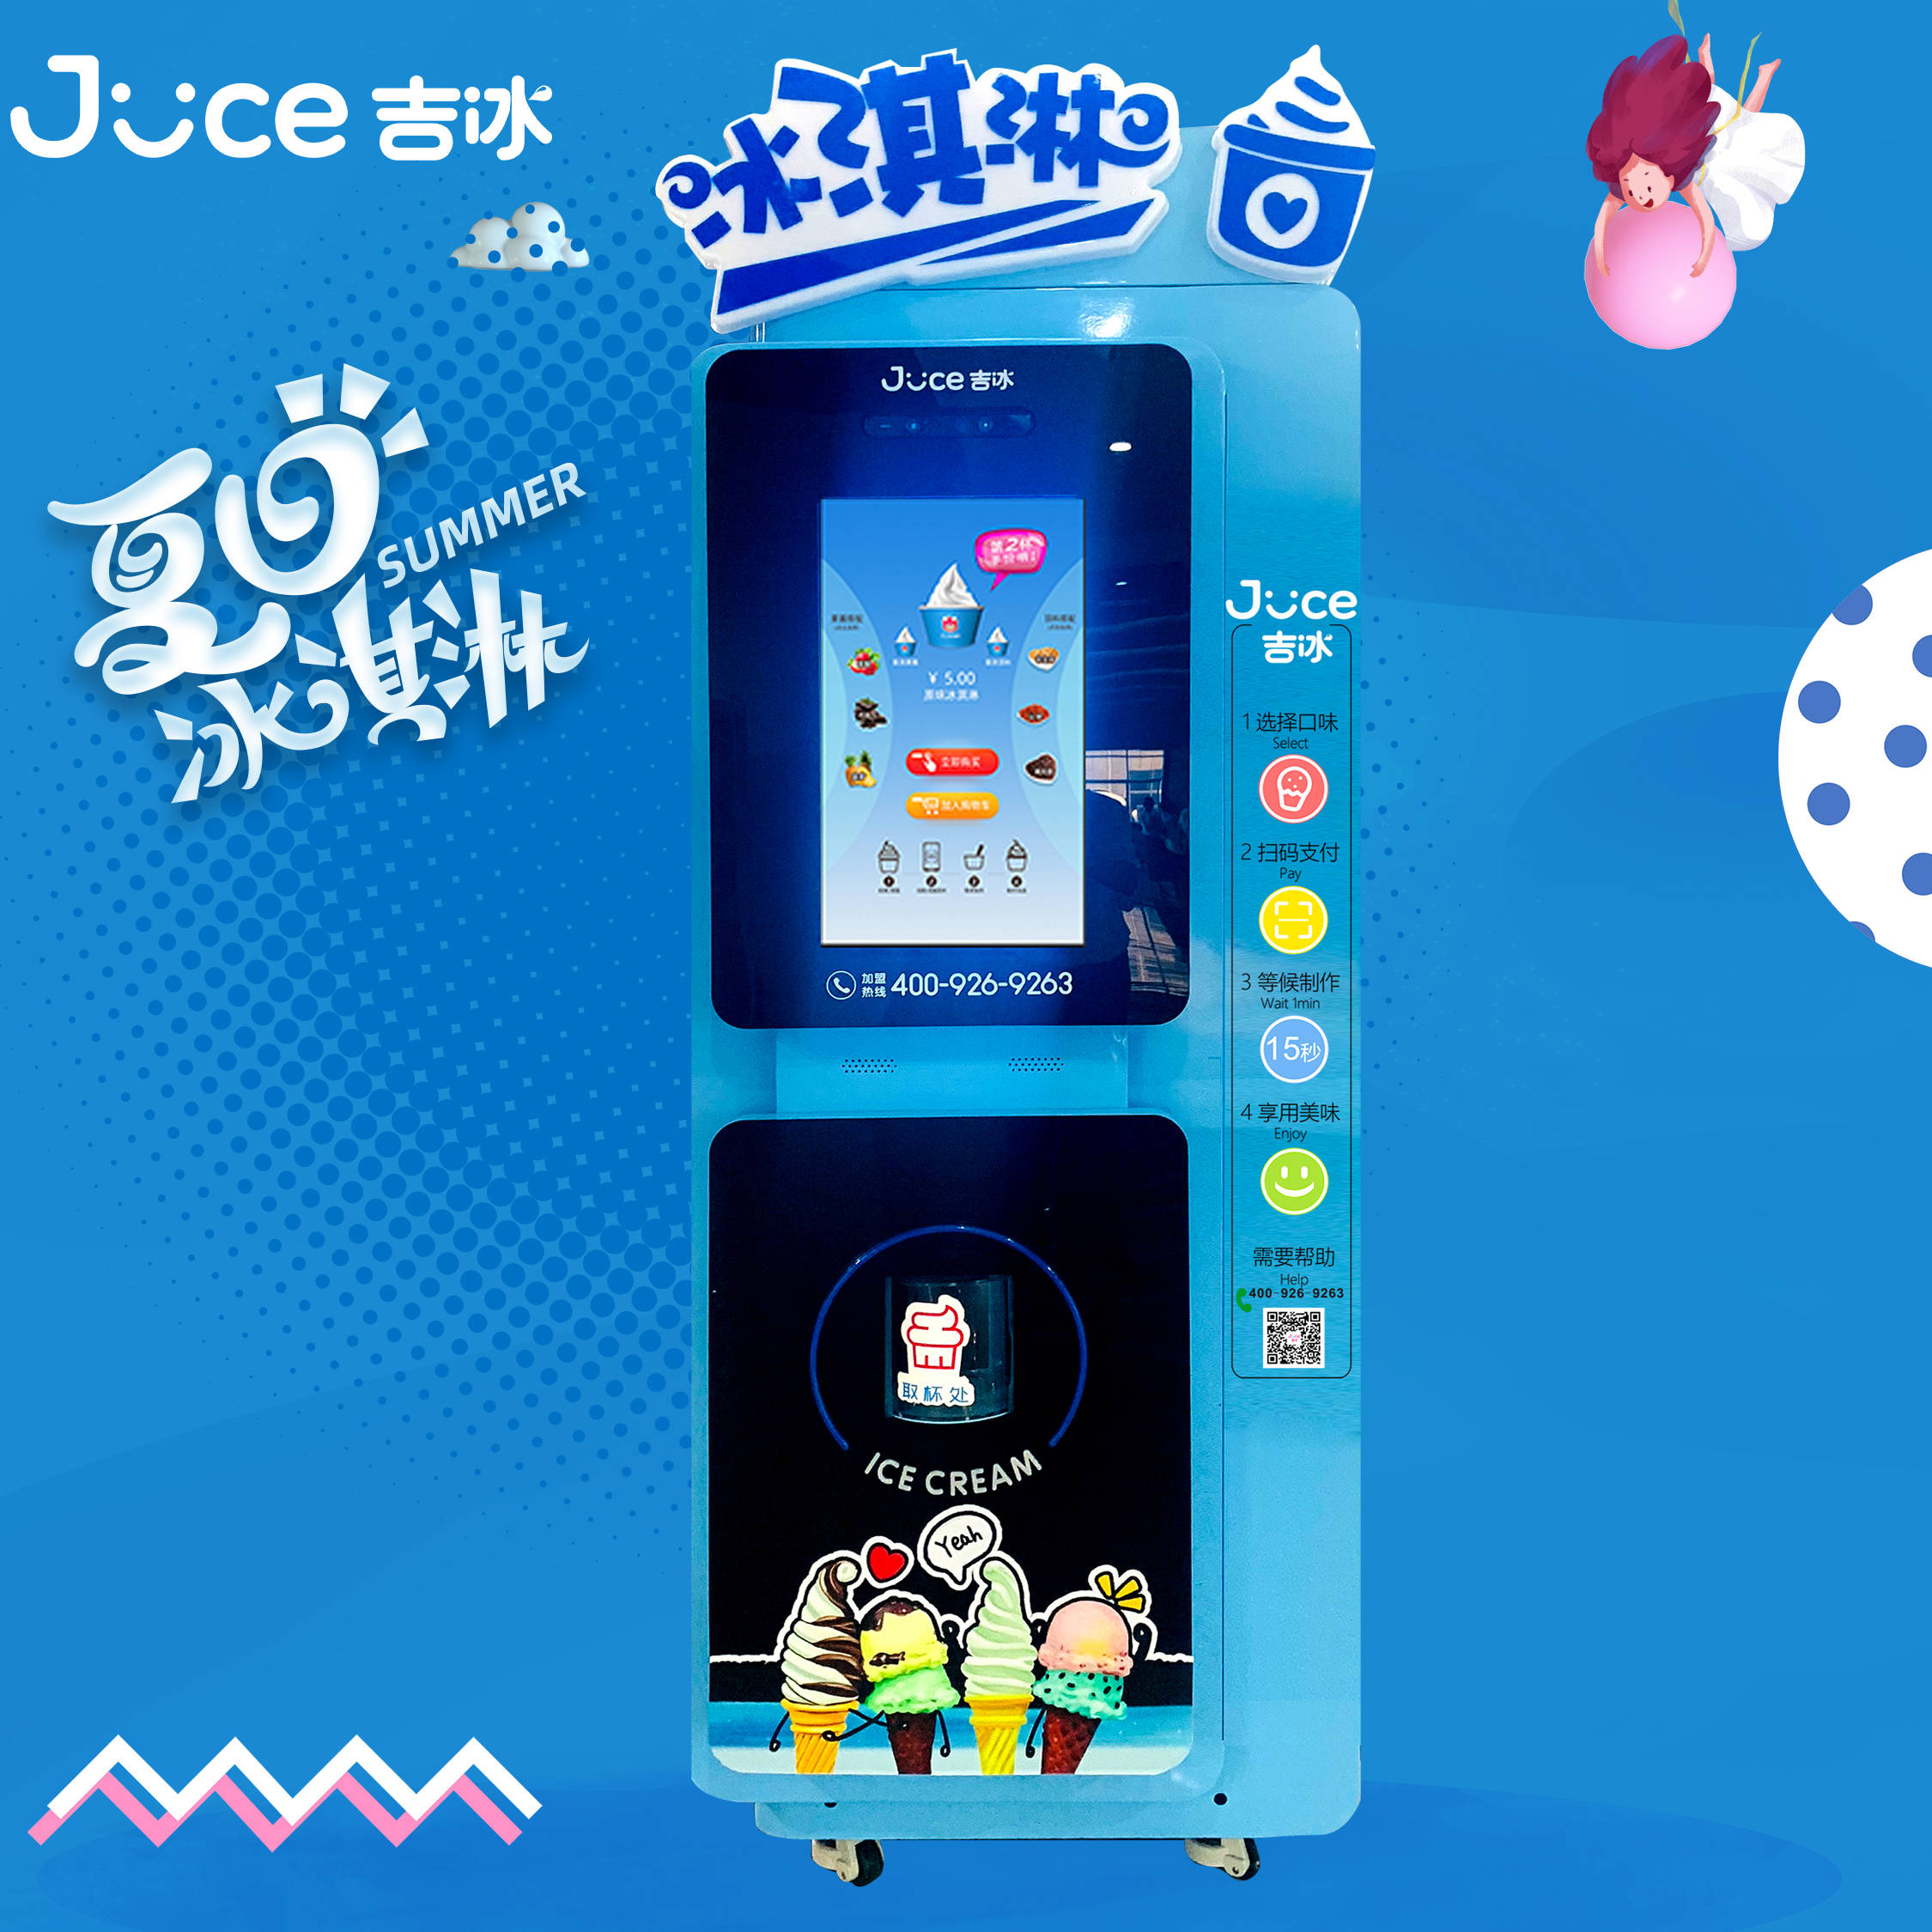 
冰淇淋自动售货机——中国未来的零售战斗机?“jbo竞博官网”